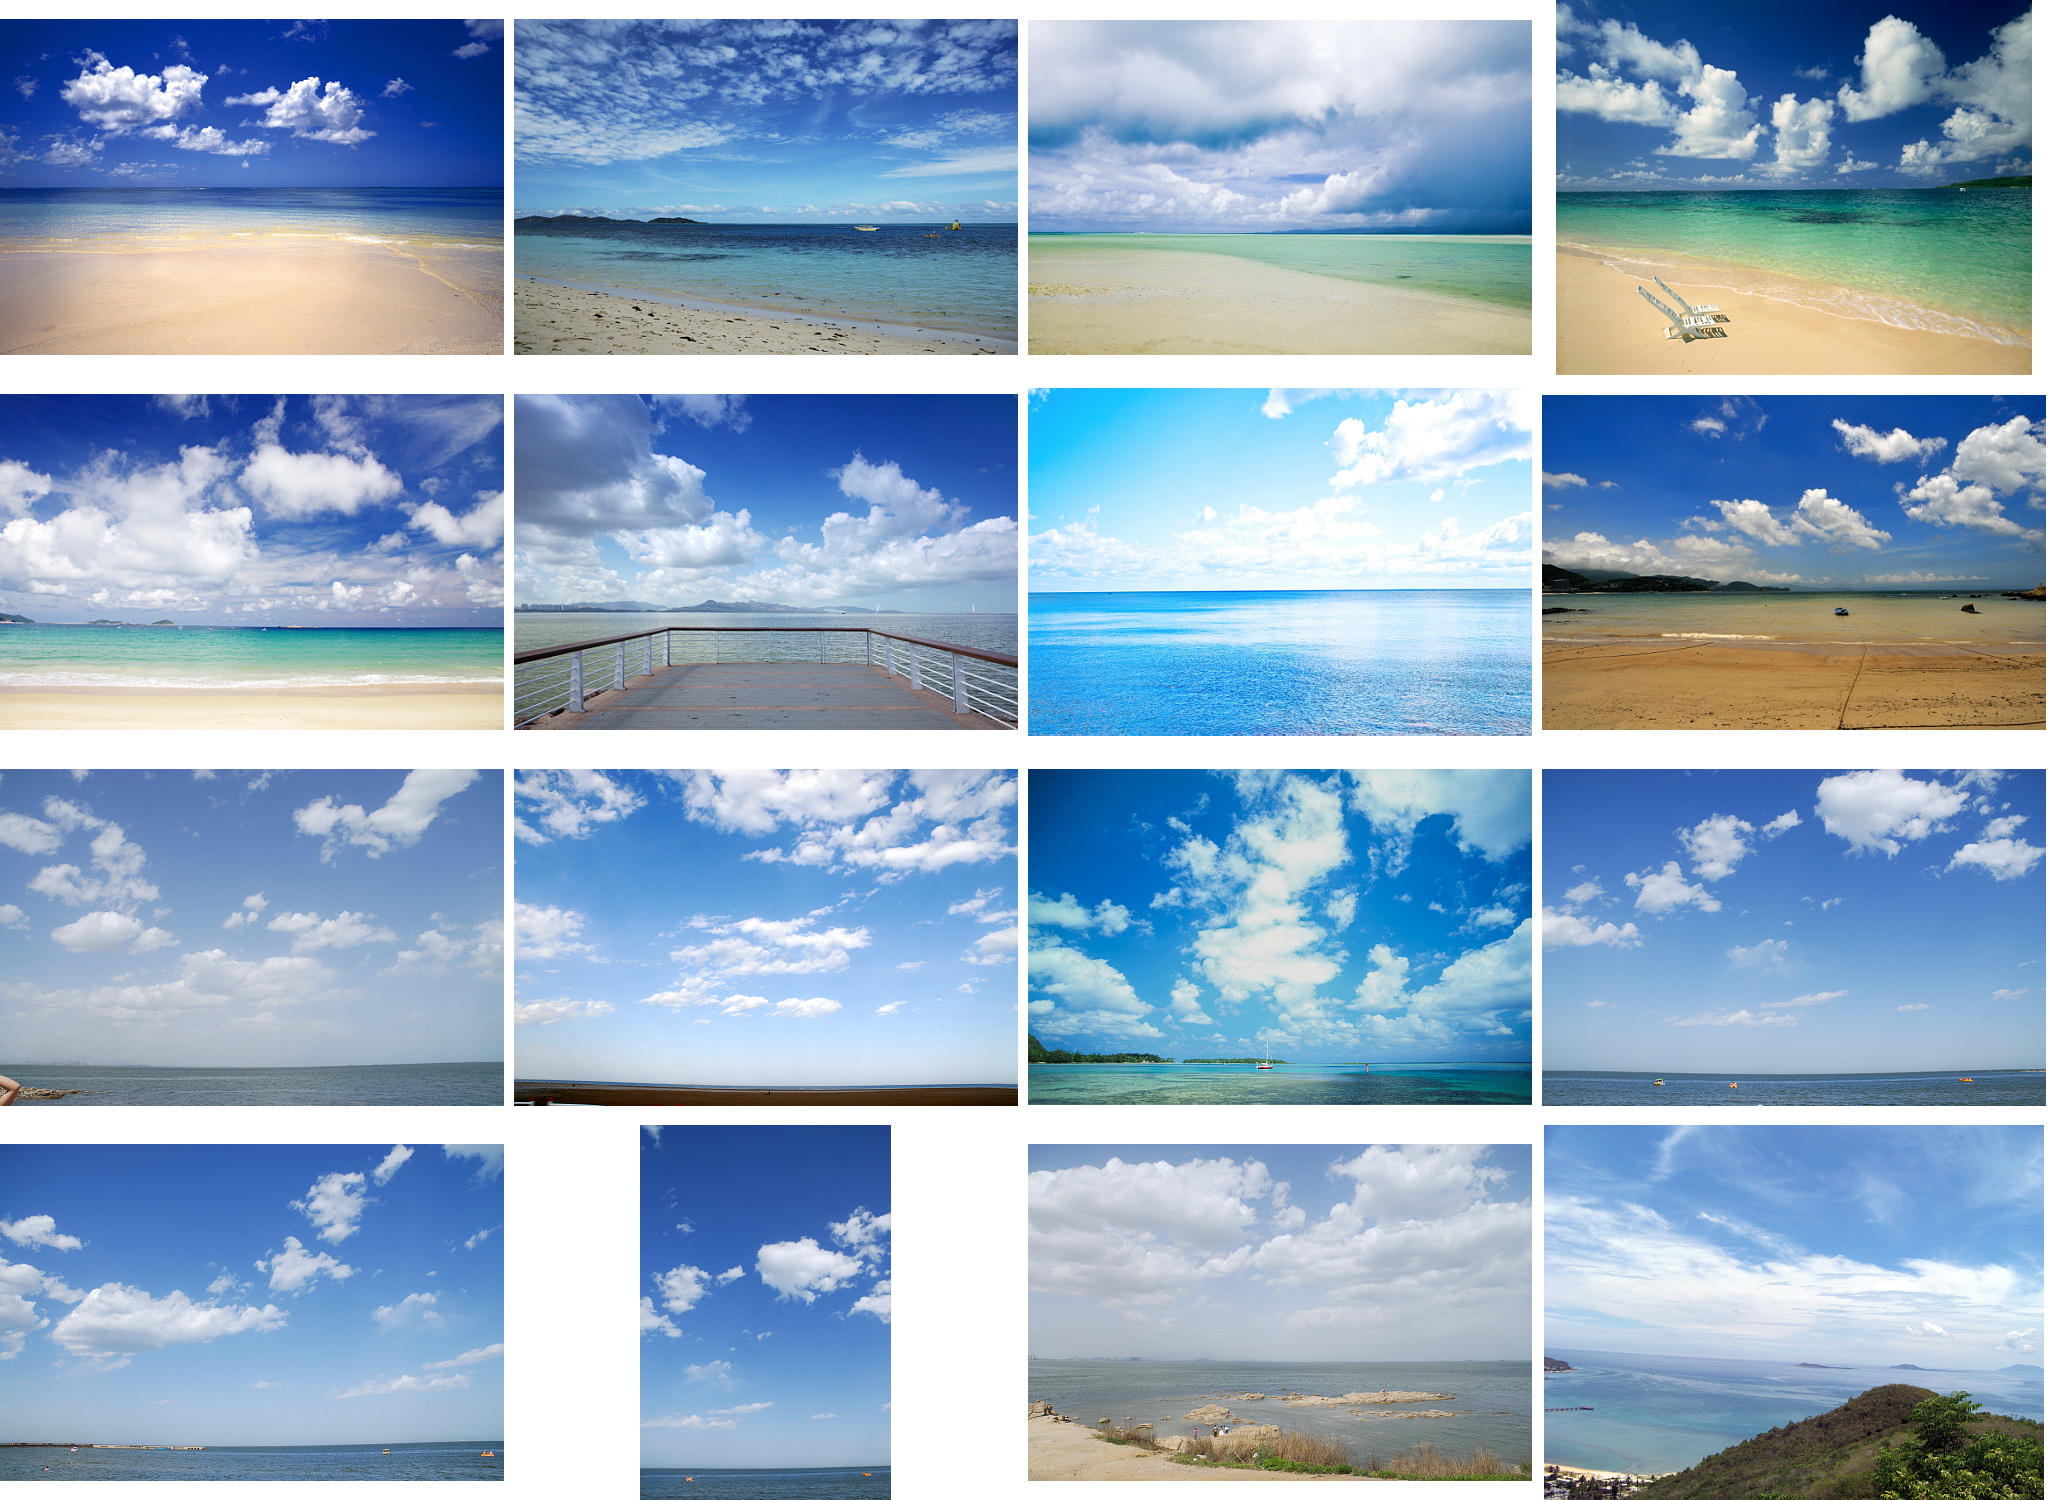 Ảnh mây: Để tận hưởng vẻ đẹp của thiên nhiên, không gì tuyệt vời hơn là chiêm ngưỡng những bức ảnh mây tuyệt đẹp được ghi lại bởi những chuyên gia nhiếp ảnh tài ba.